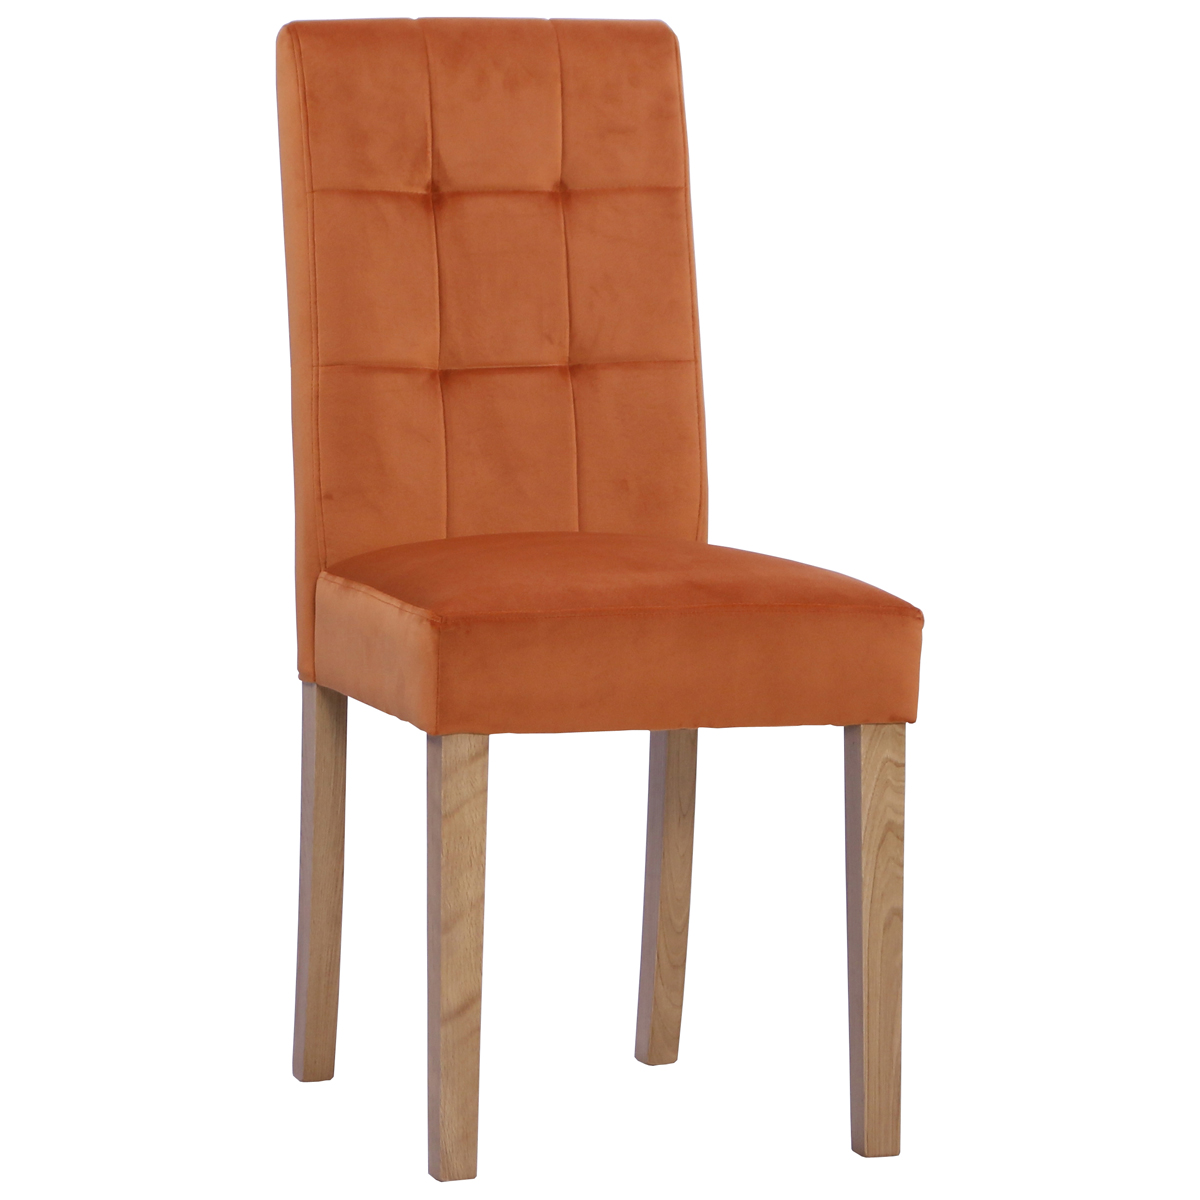 New Oak Ash 102 Chair